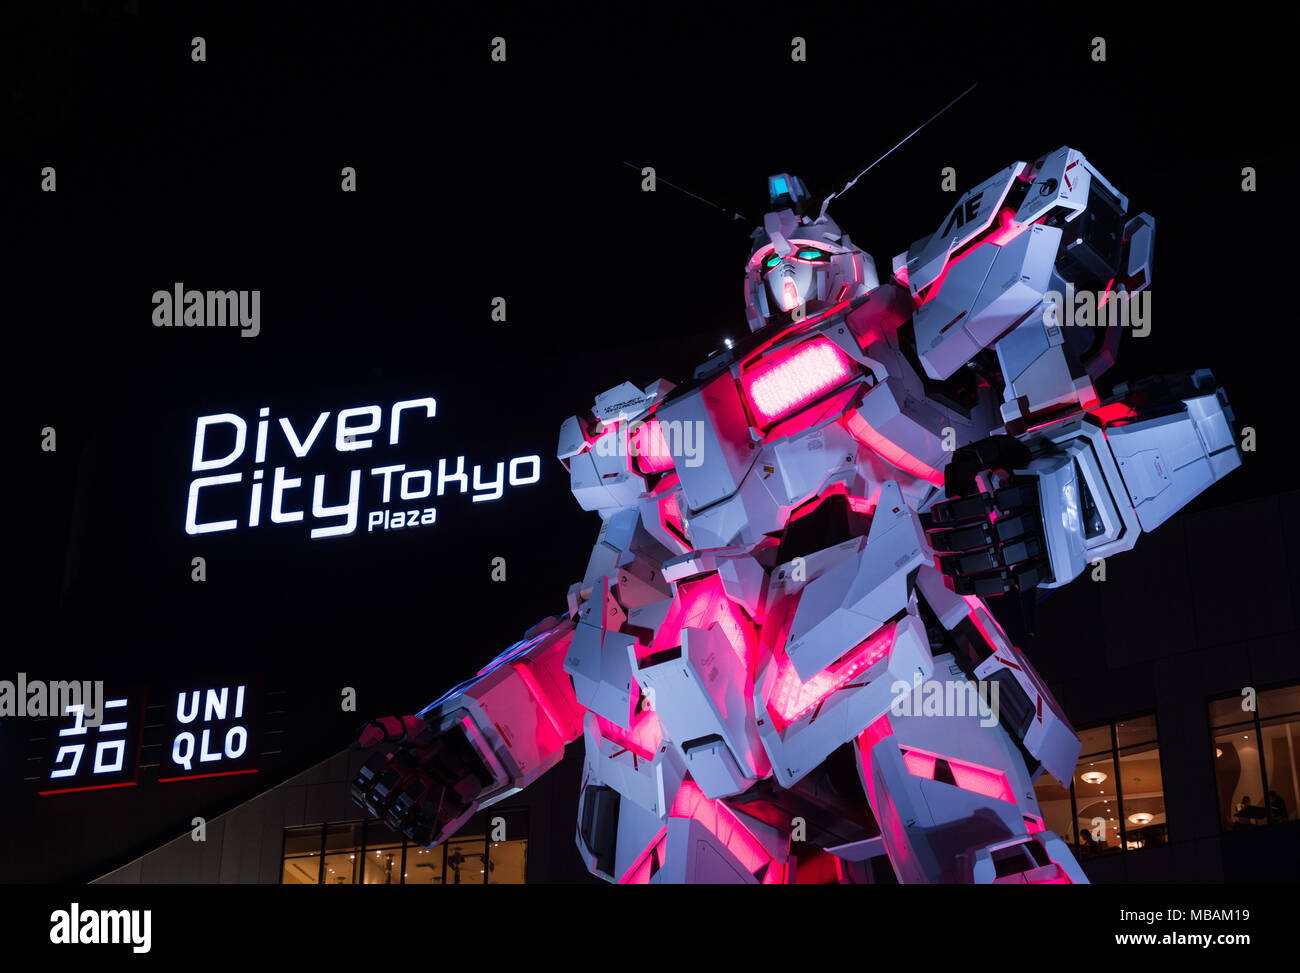 Lebensgroße Unicorn Gundam Statue vor Diver City Kaufhaus in Odaiba Bezirk, eine künstliche ilsand in der Bucht von Tokio Stockfoto